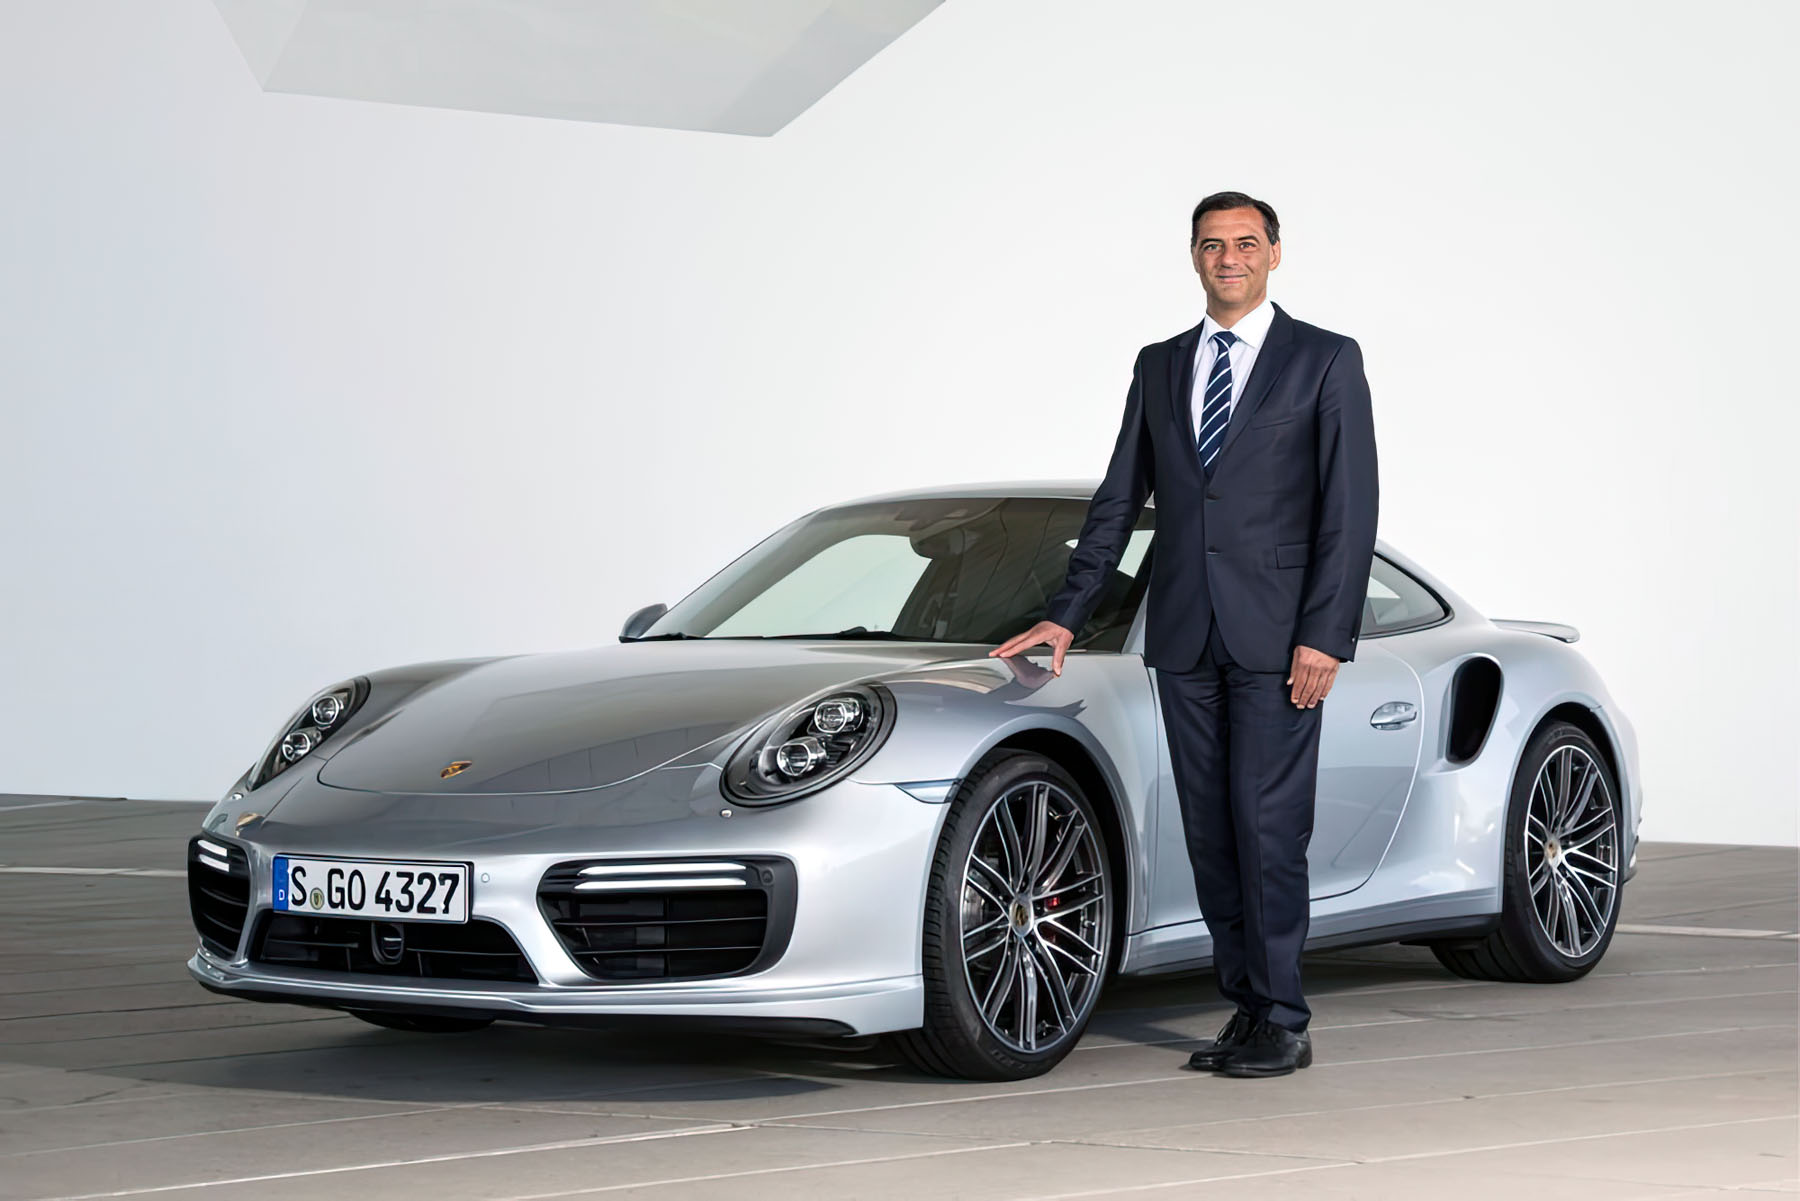 Porsche AG posts robust growth in first nine months - Porsche Newsroom